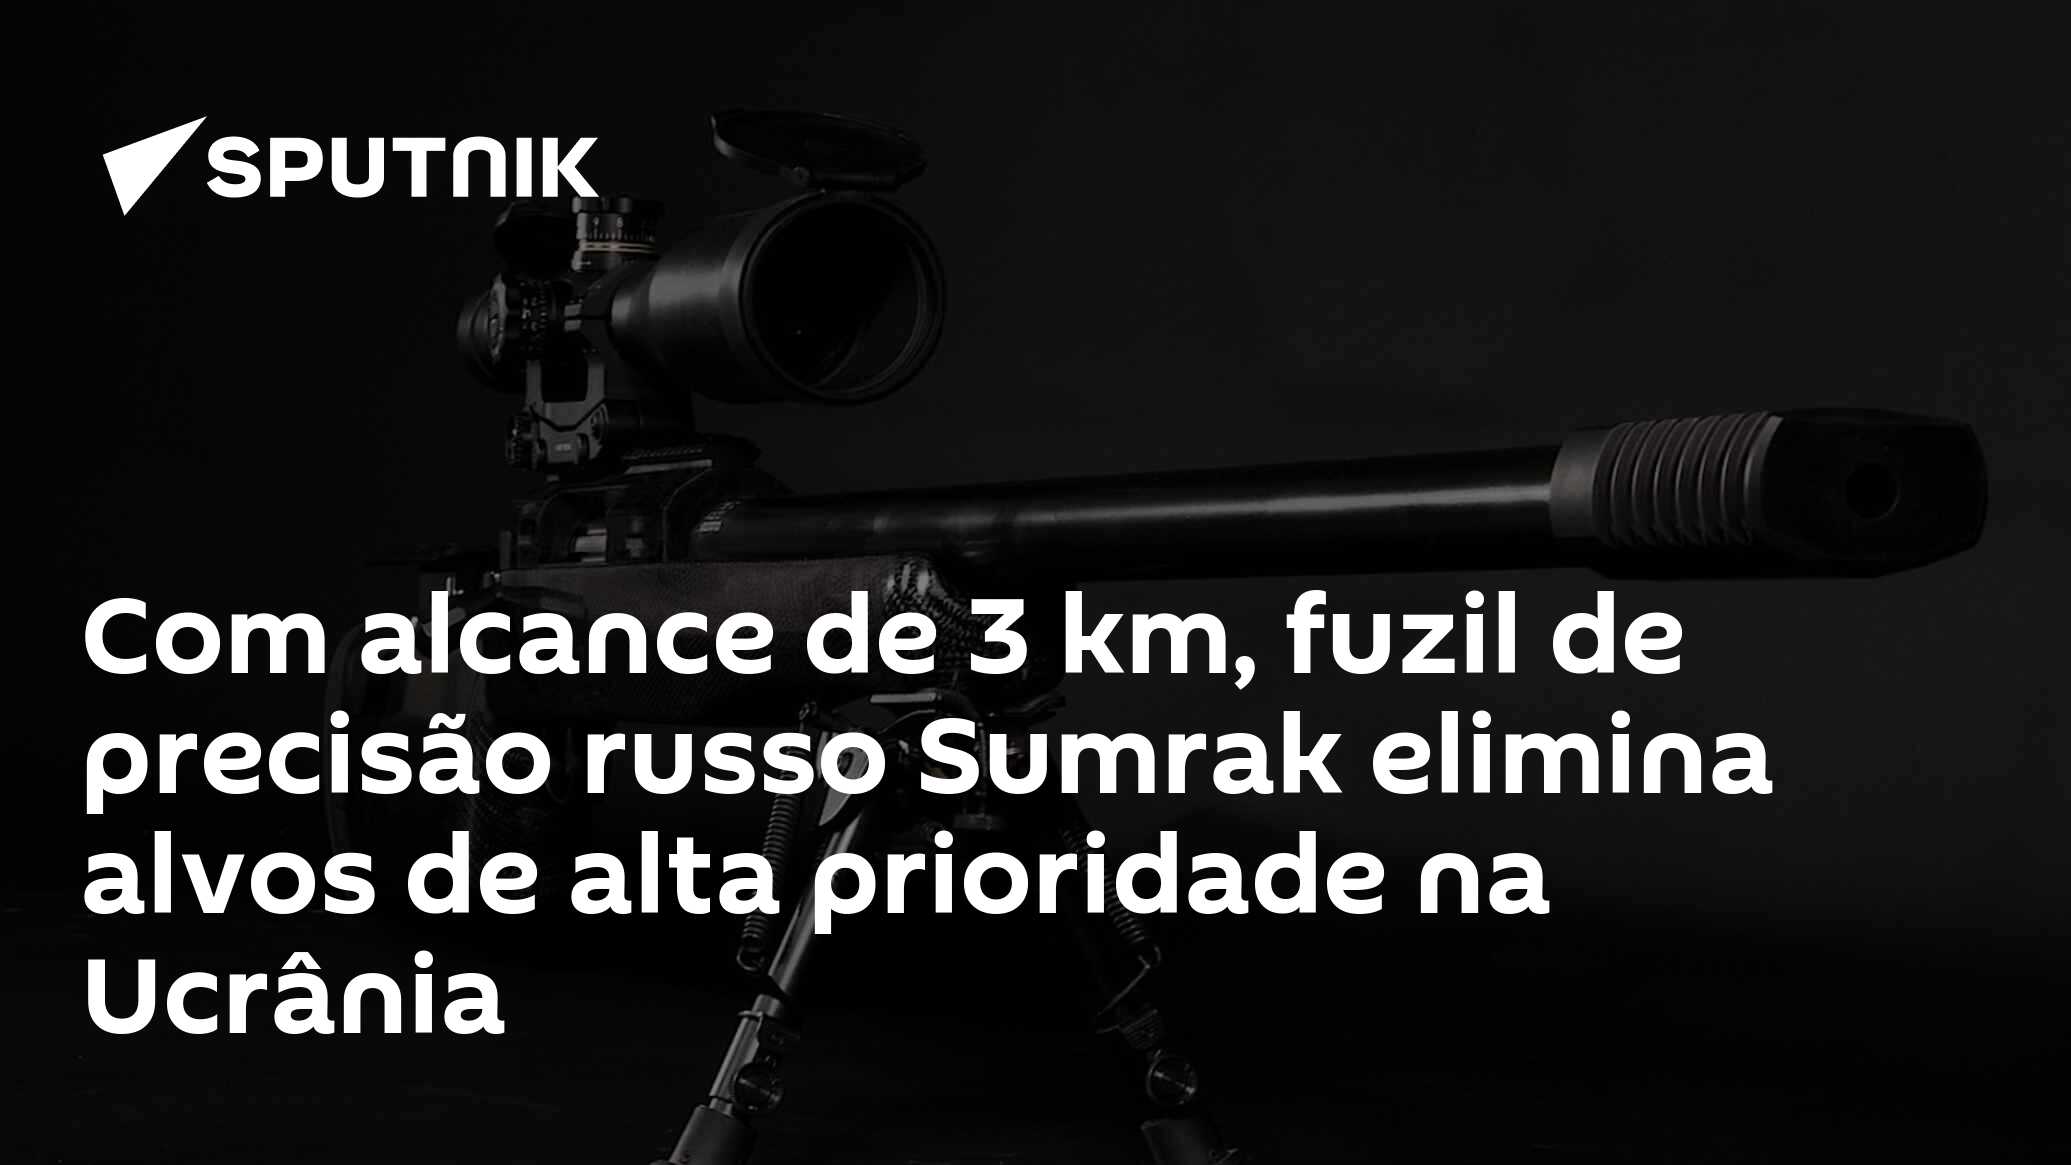 Novo fuzil de sniper russo SVDK é o mais letal da categoria, avalia mídia  dos EUA - 30.11.2019, Sputnik Brasil